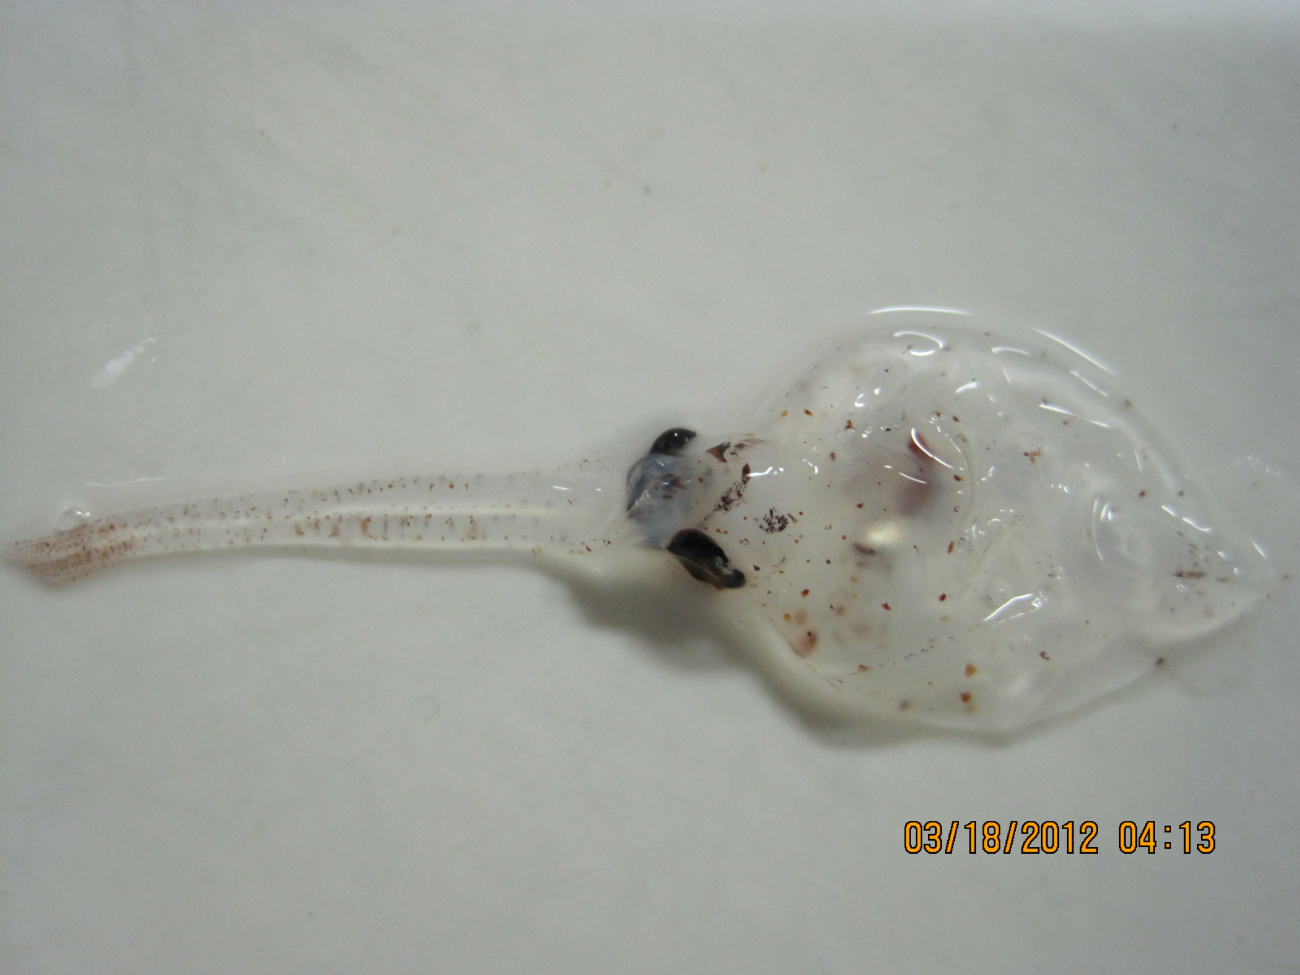 Larval flatfish